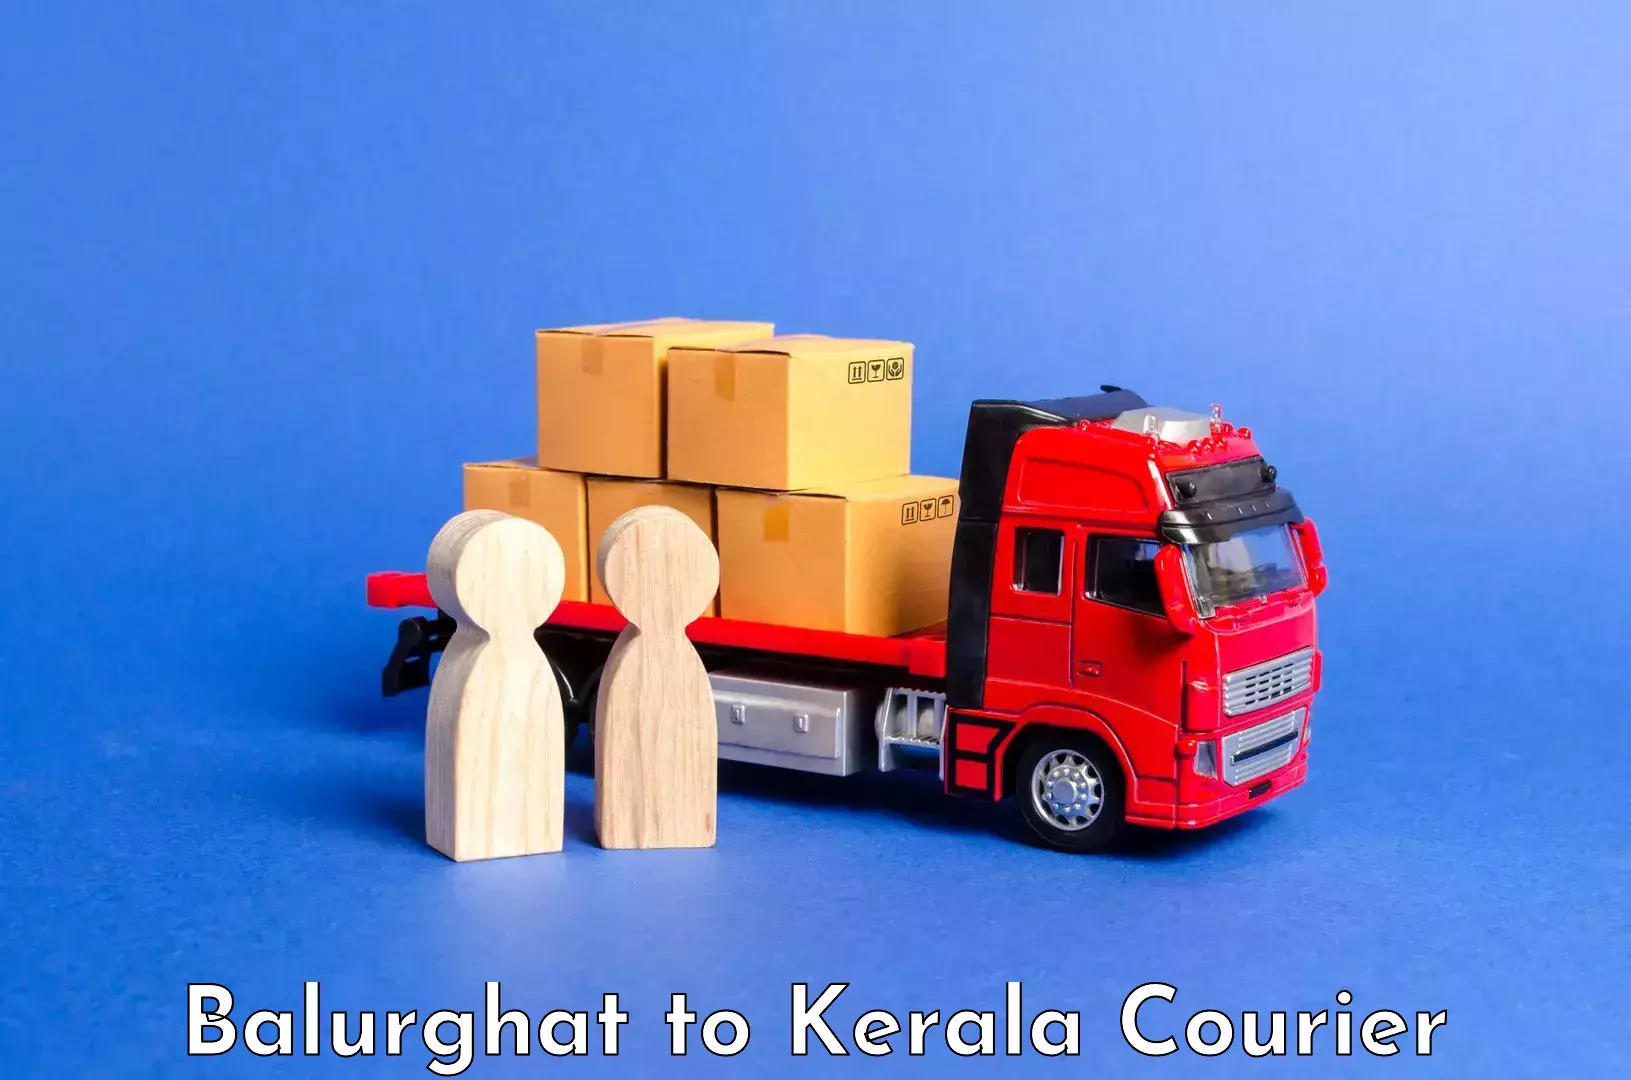 Luggage shipment specialists Balurghat to Neyyattinkara